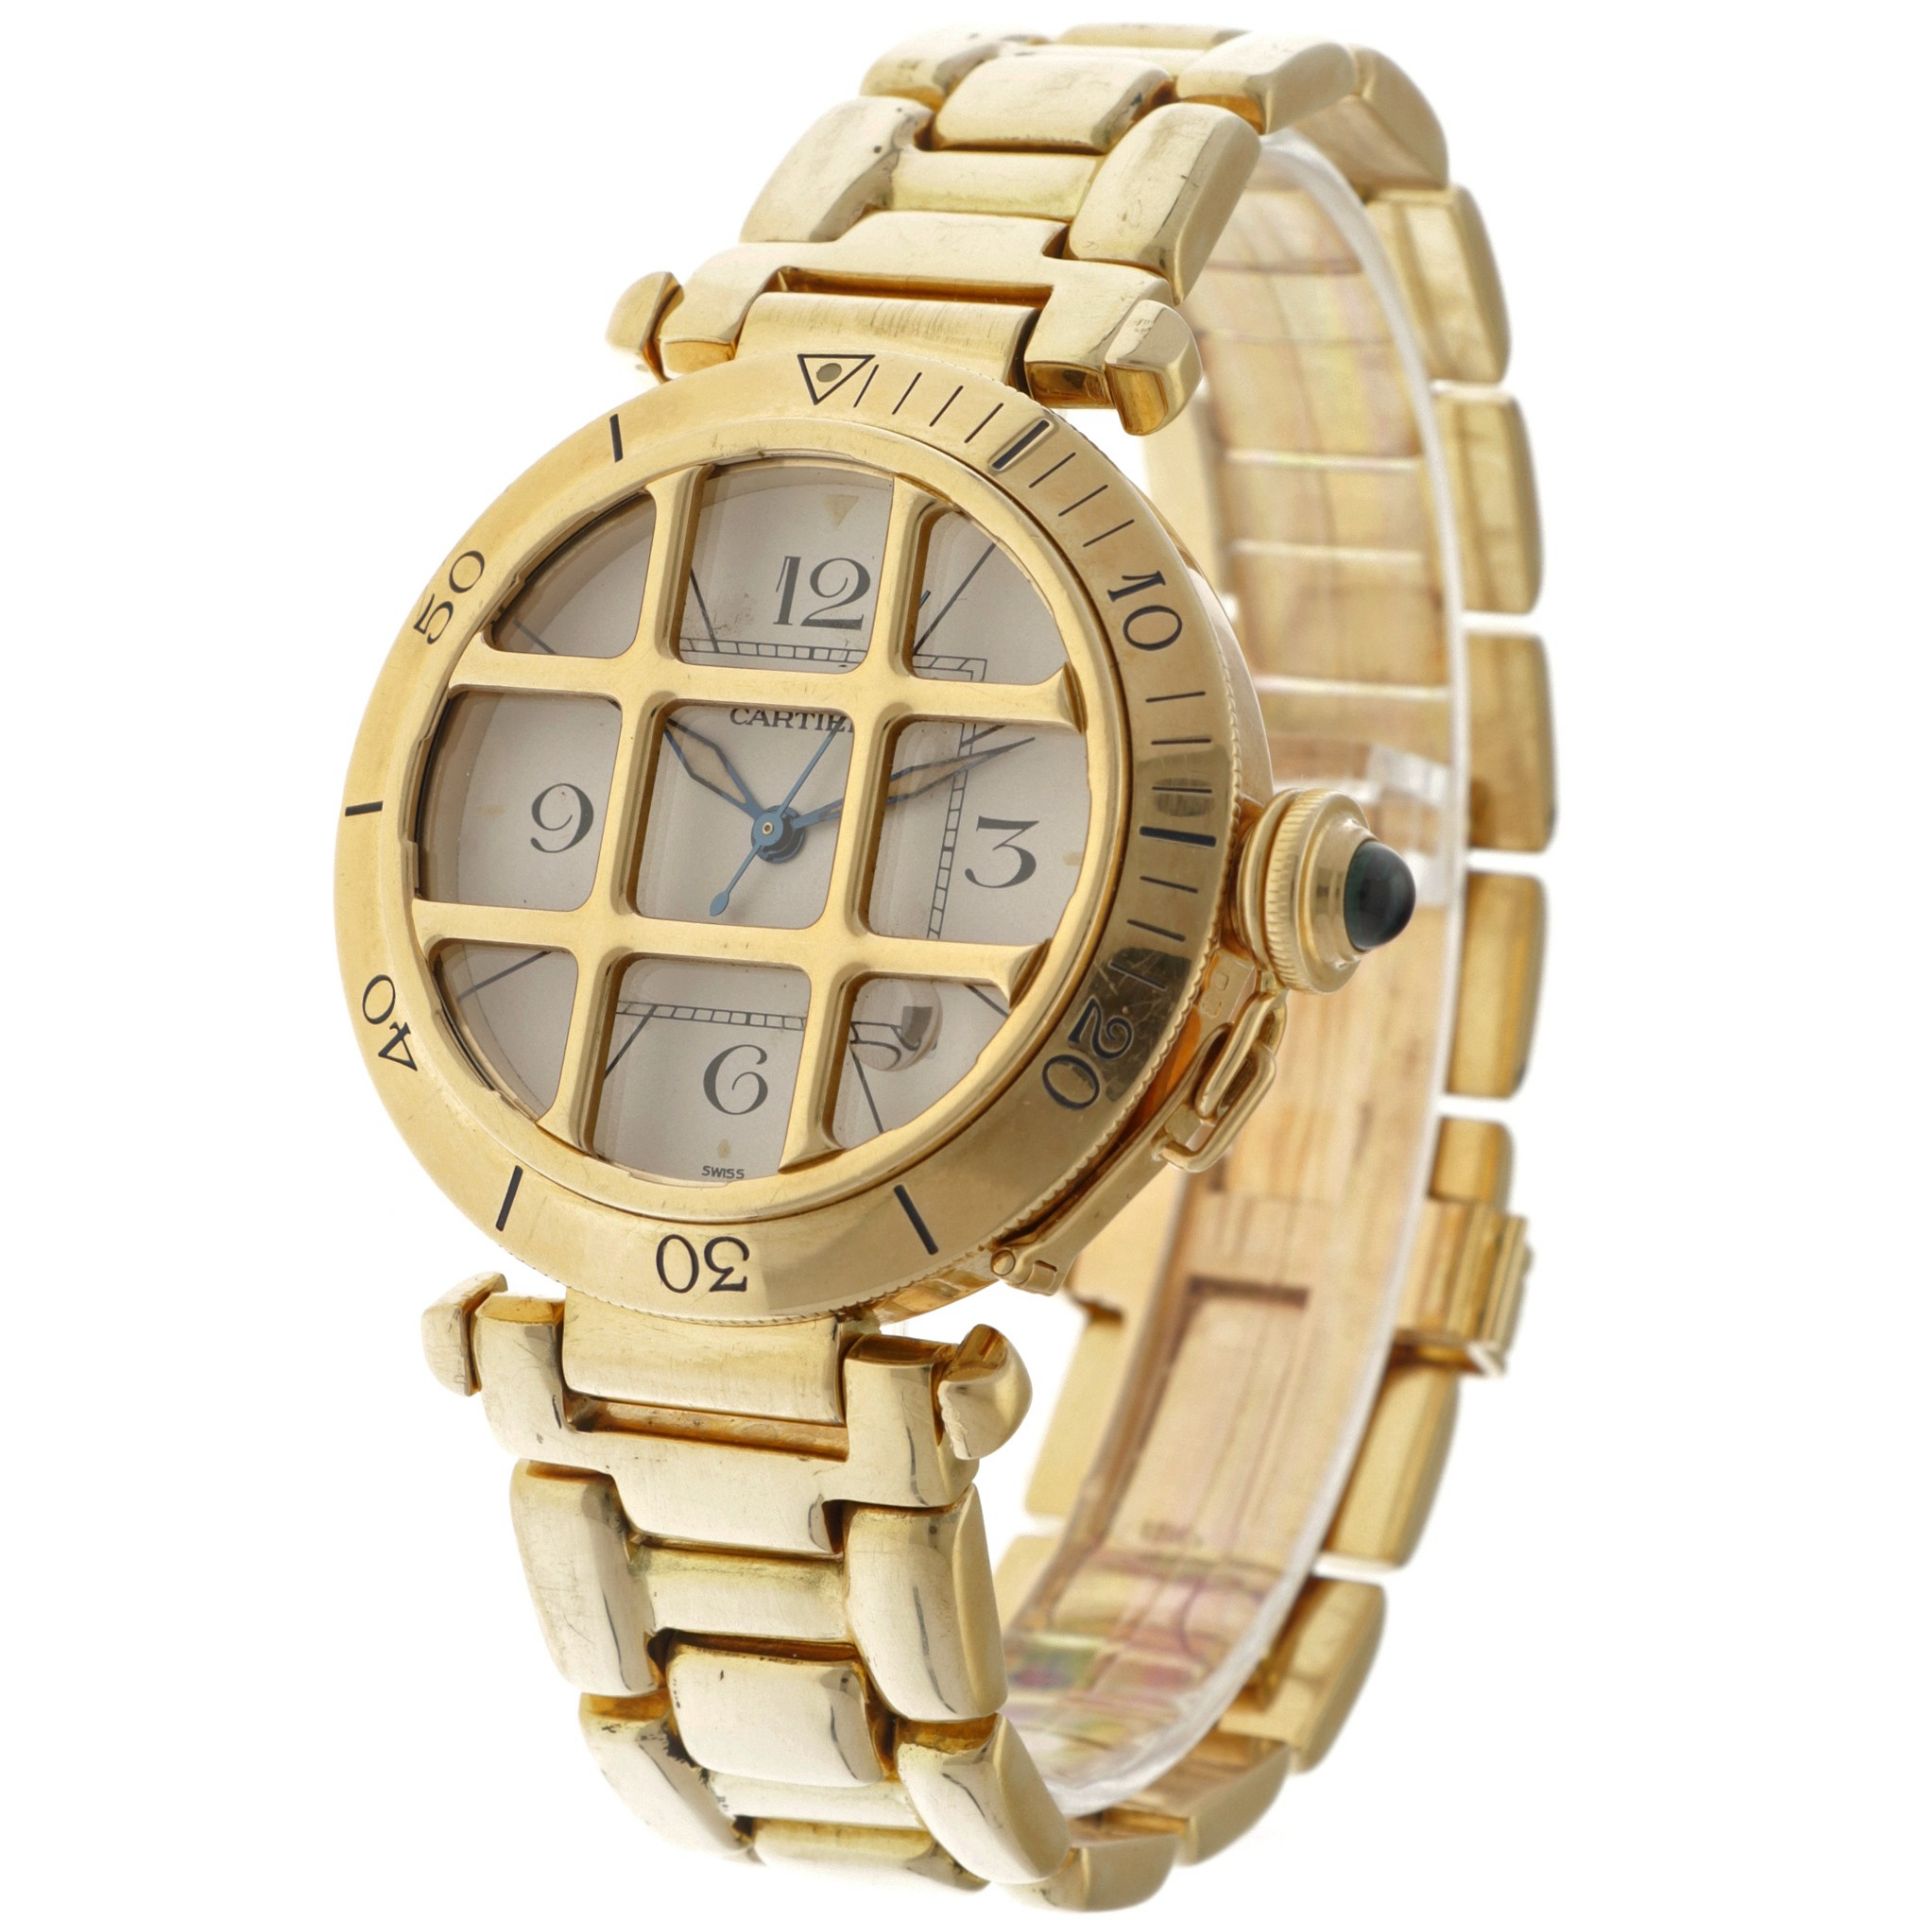 Cartier Pasha 18K. 1021 1 - Men's watch.  - Image 2 of 5